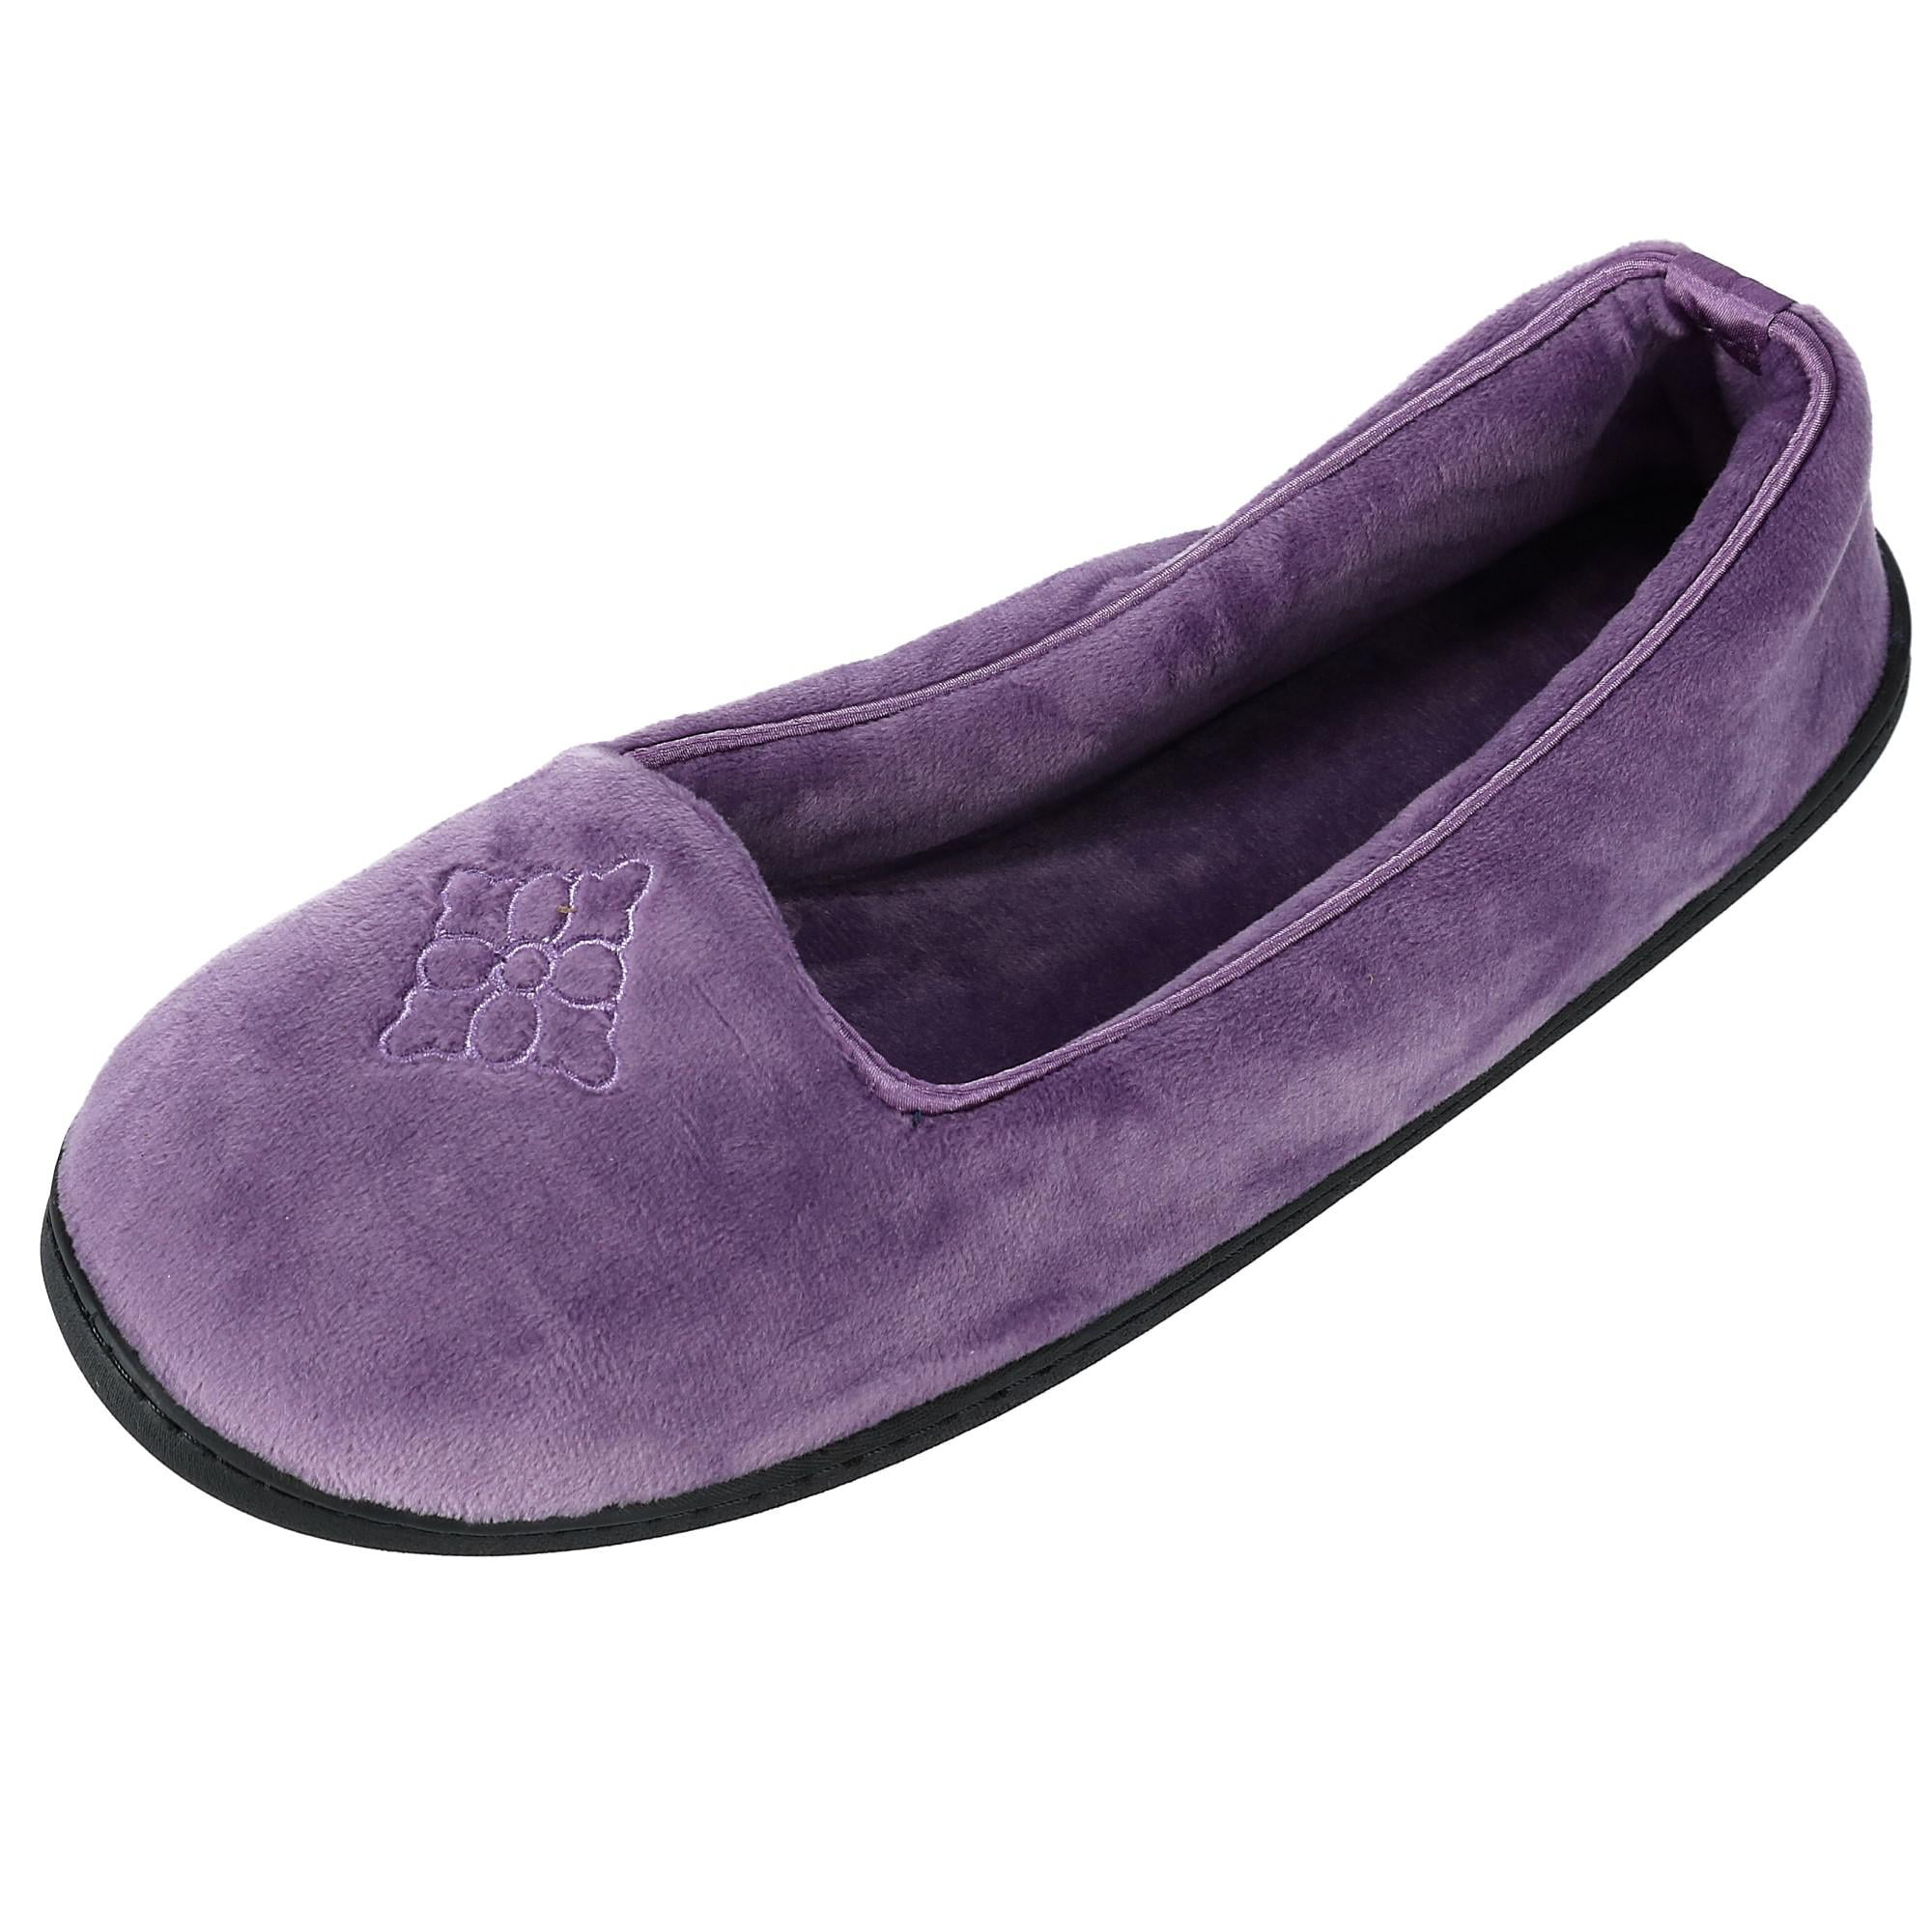 dearfoam closed back women's slippers